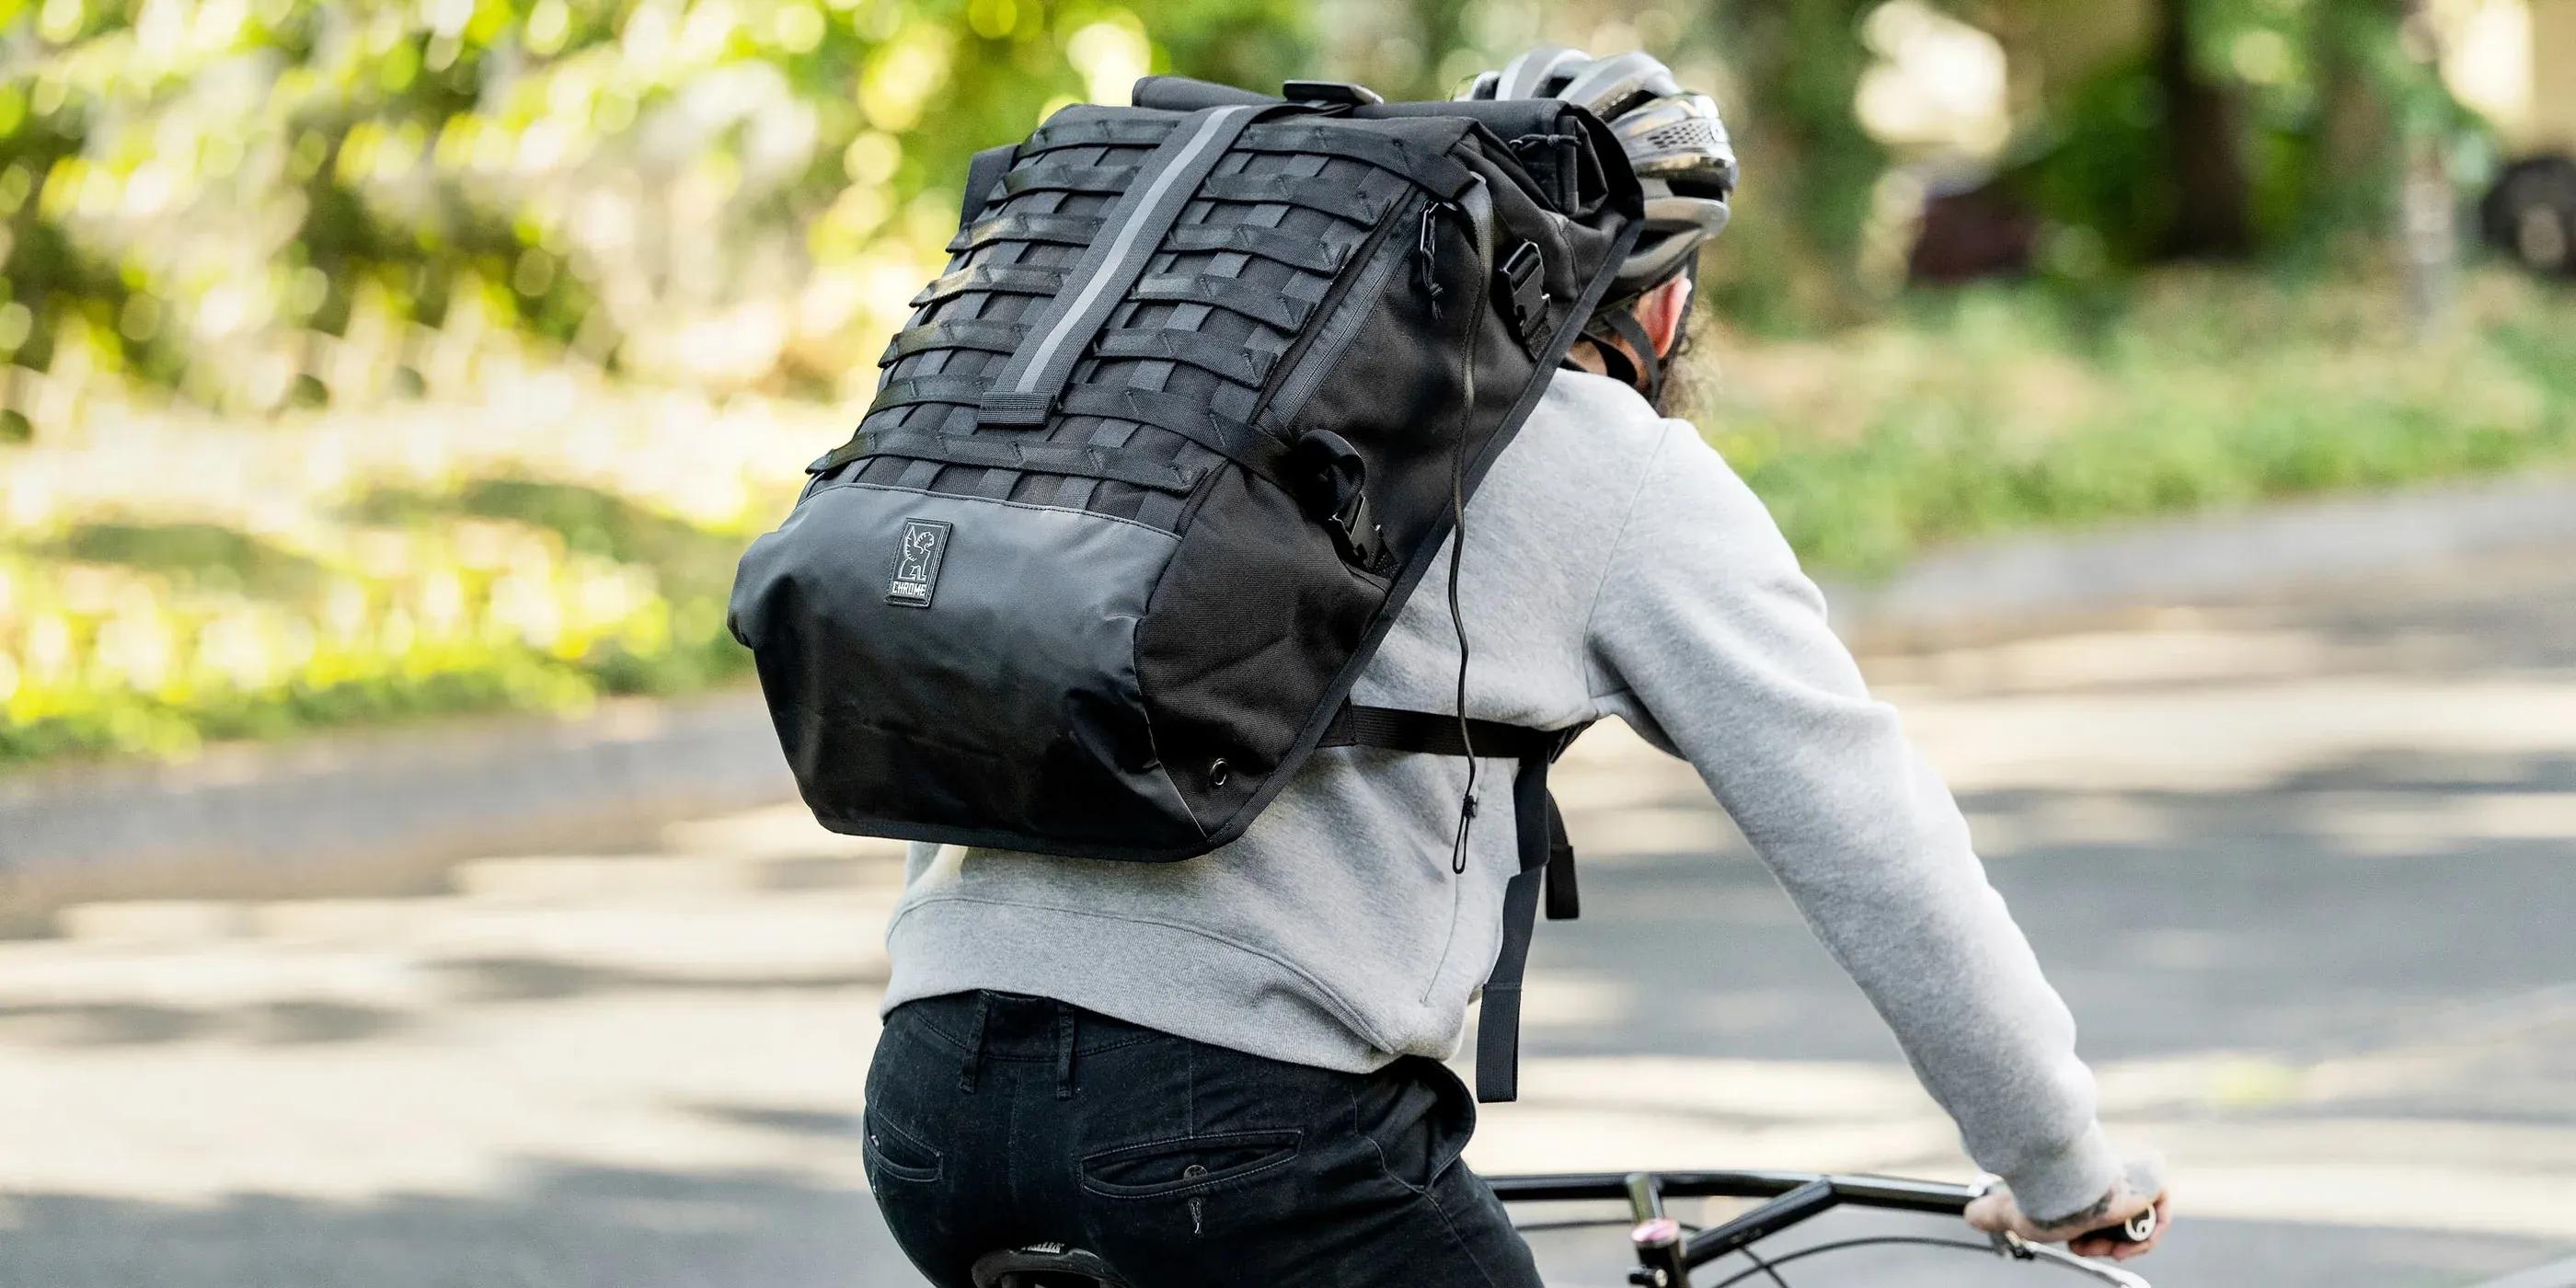 Chrome cargo backpack - promotional.jpeg